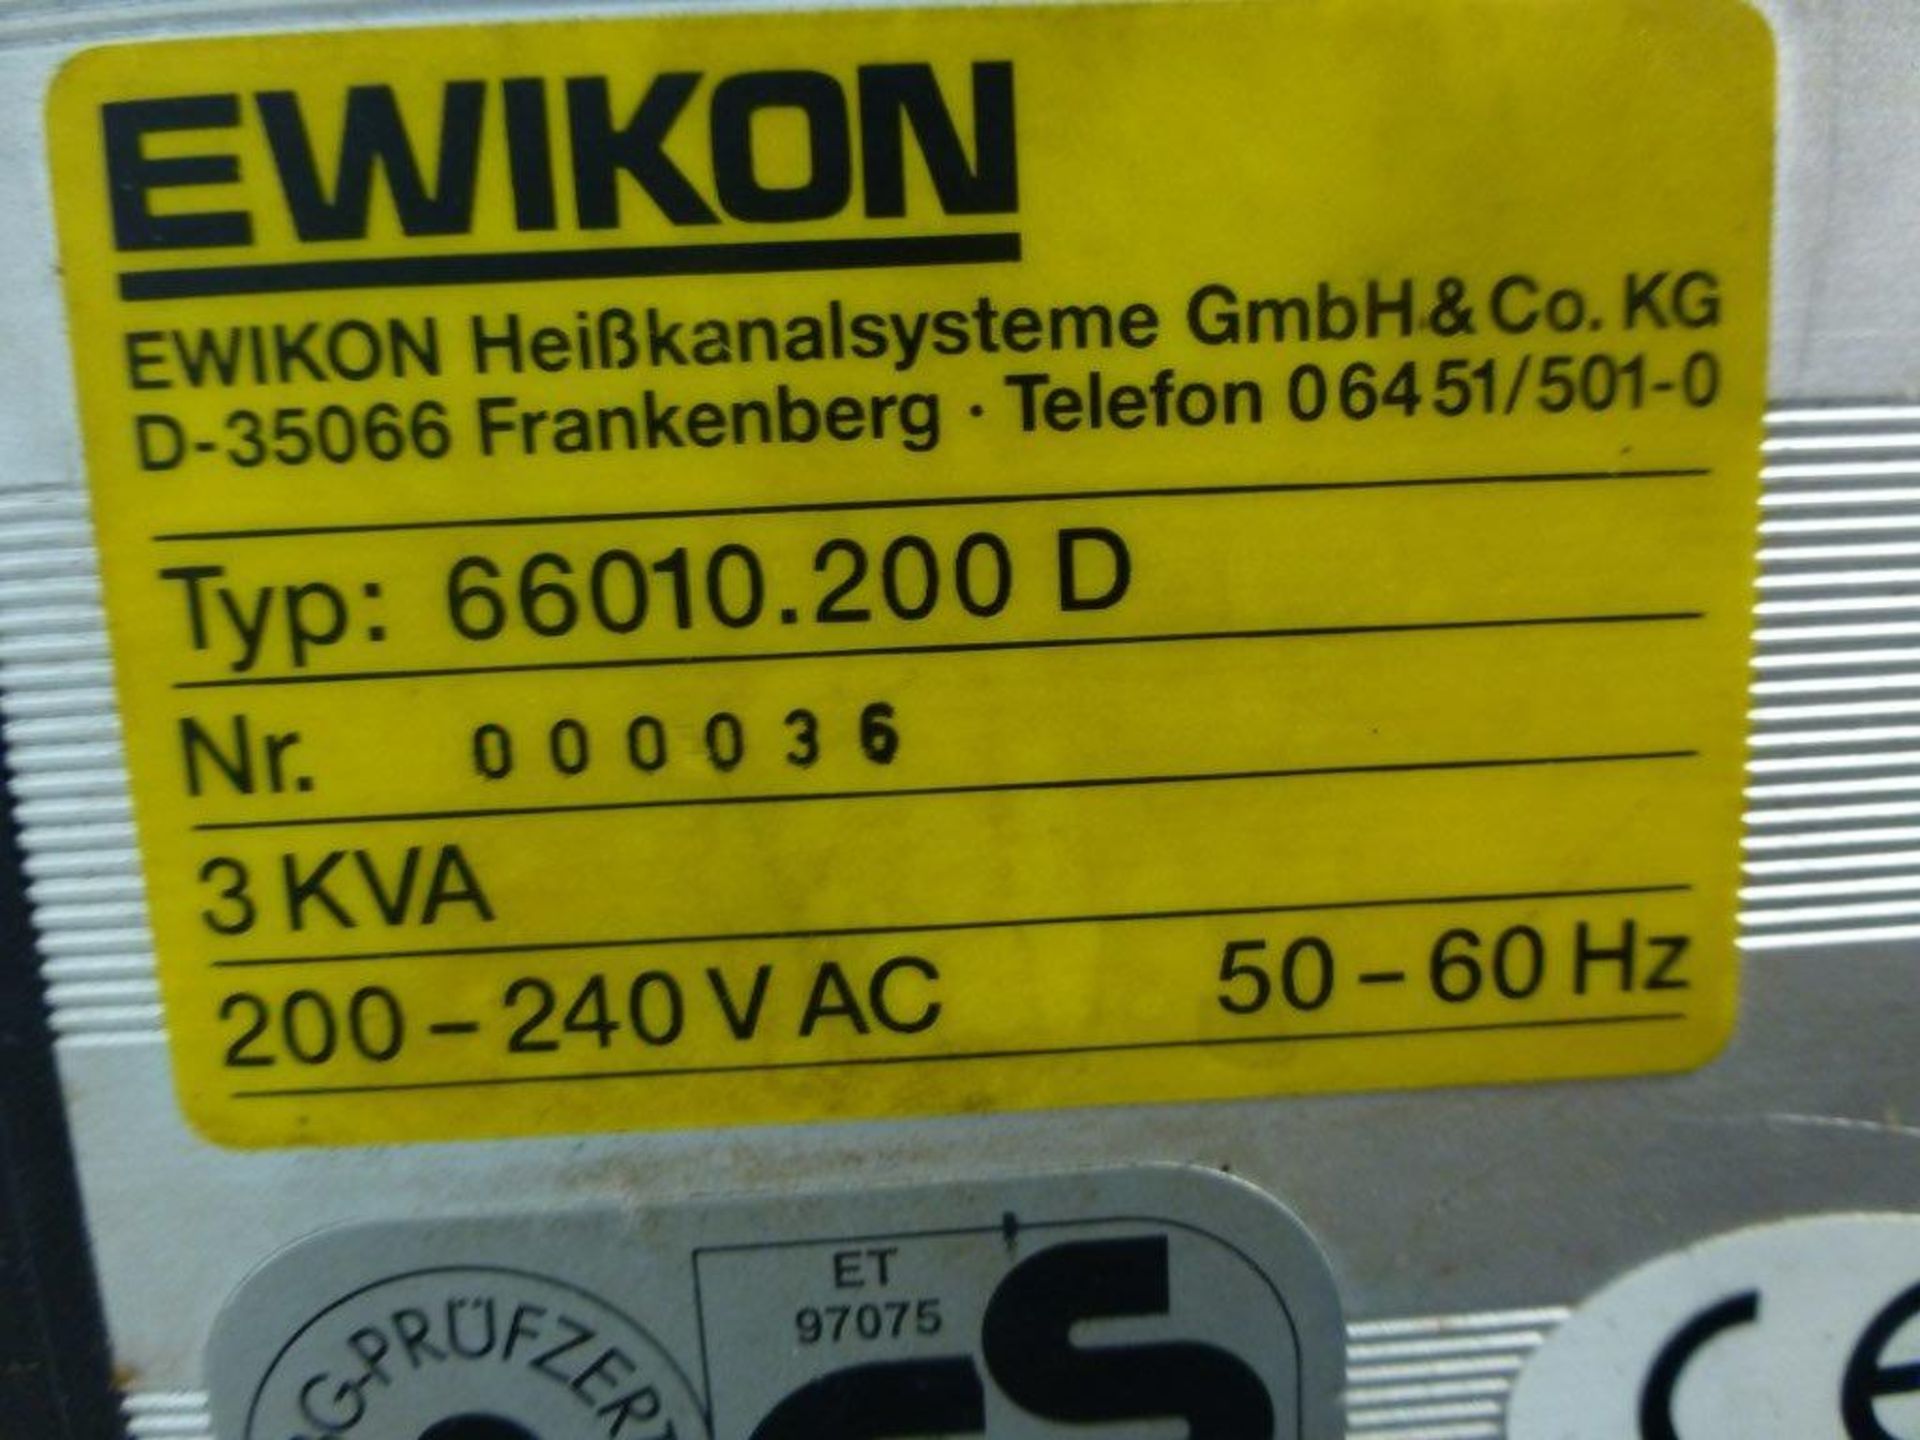 Ewikon 66010.200D controller unit, serial No 000036 - Bild 2 aus 2